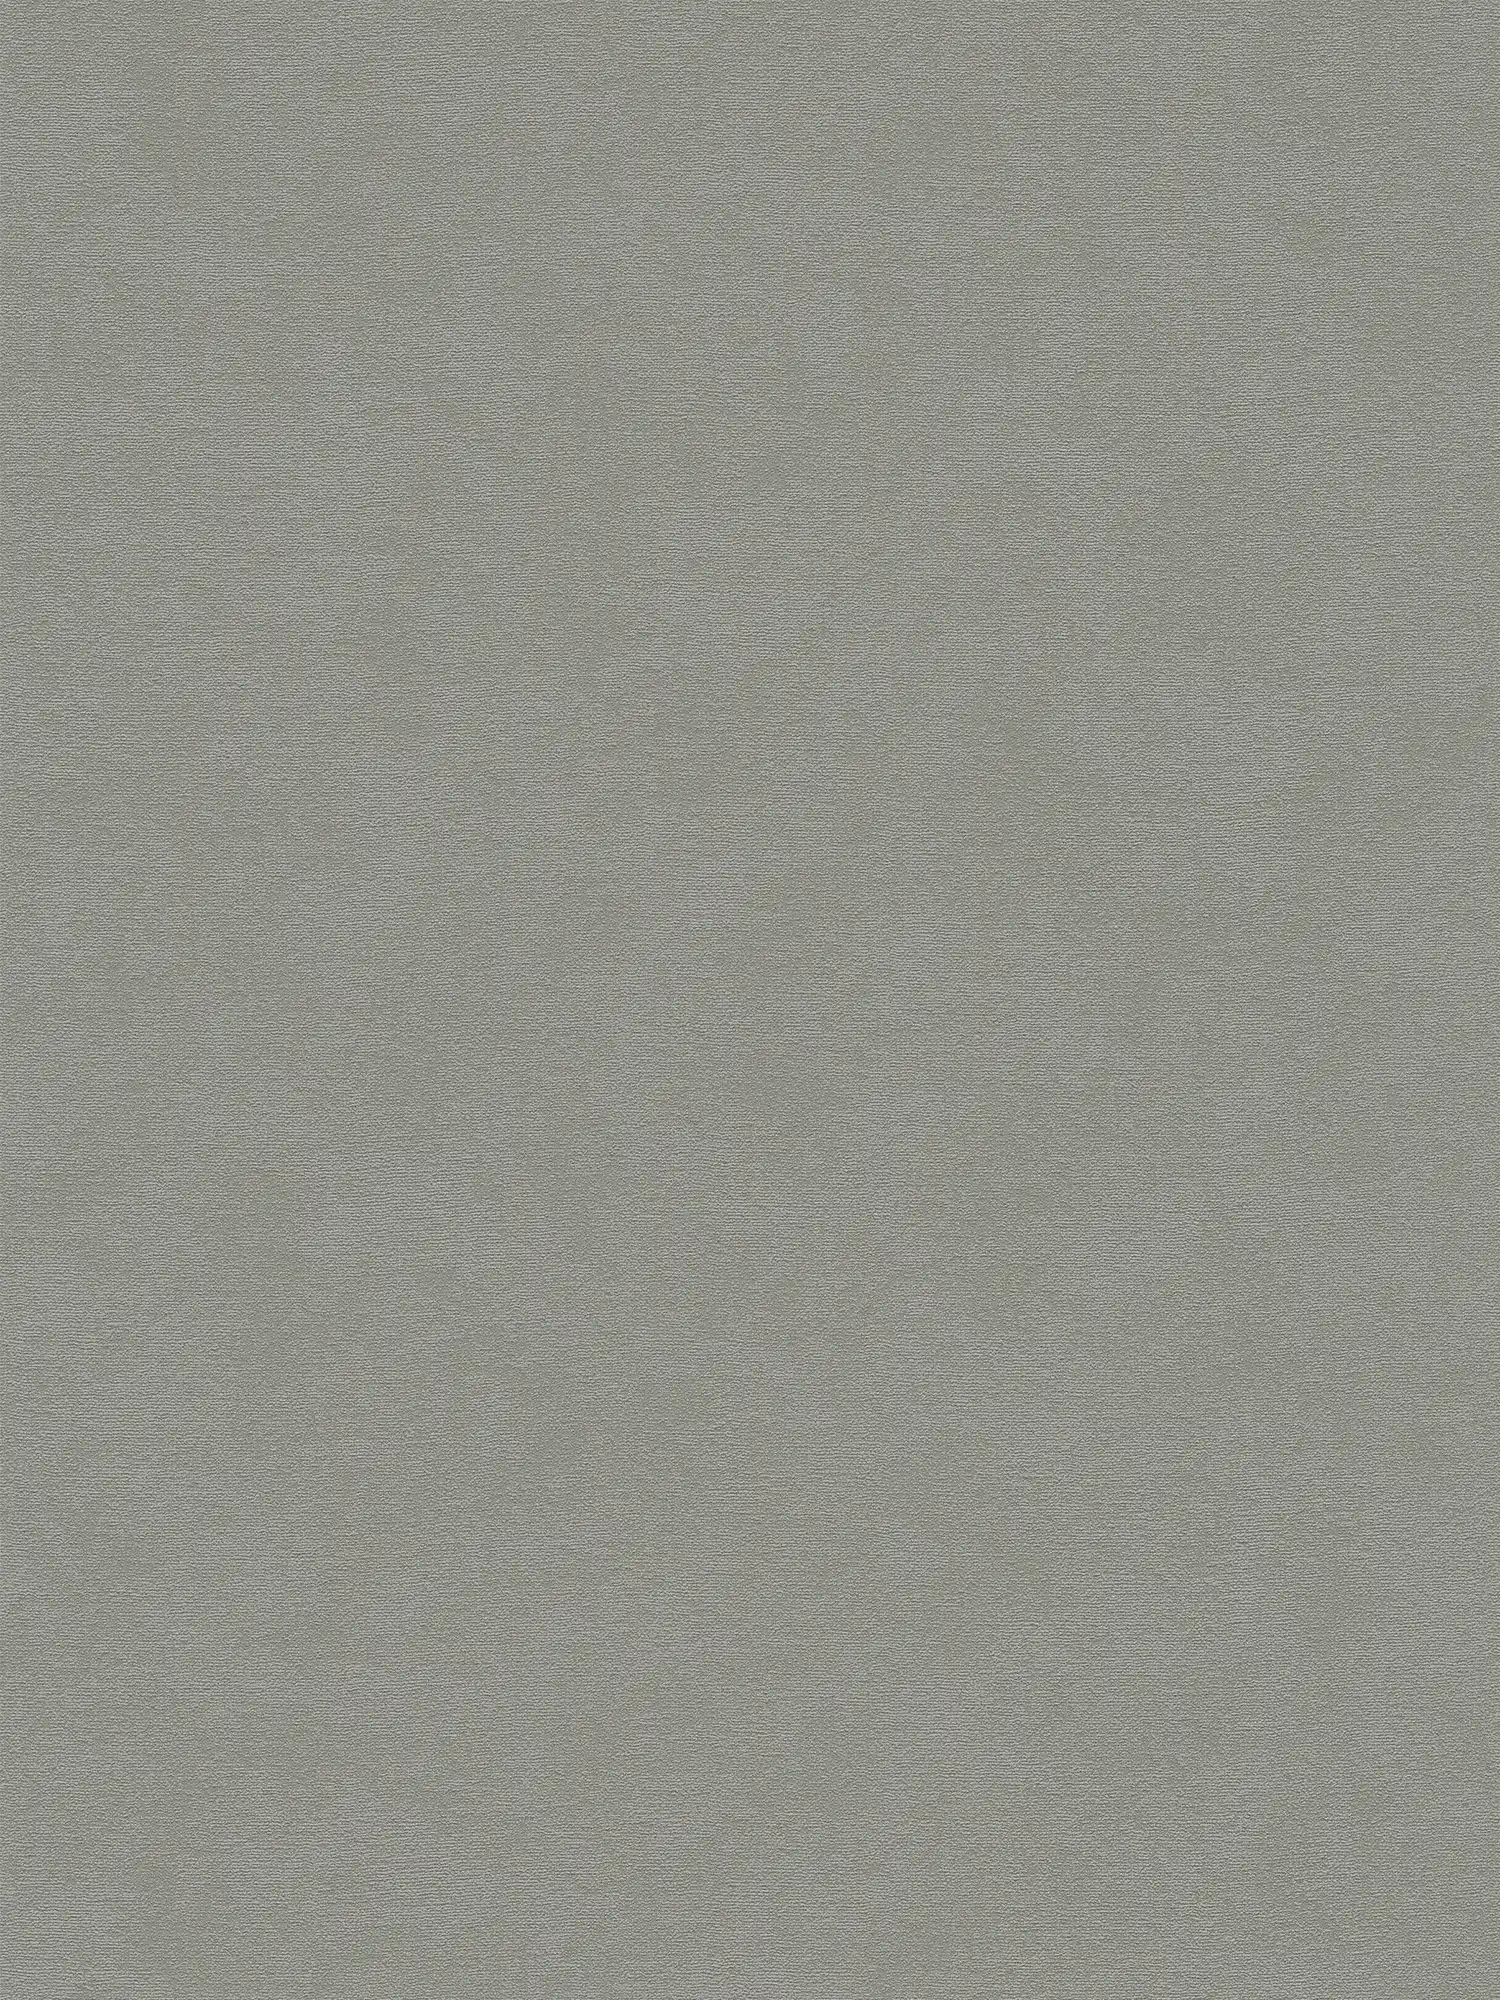 Carta da parati non tessuta con superficie monocolore a trama fine - grigio
